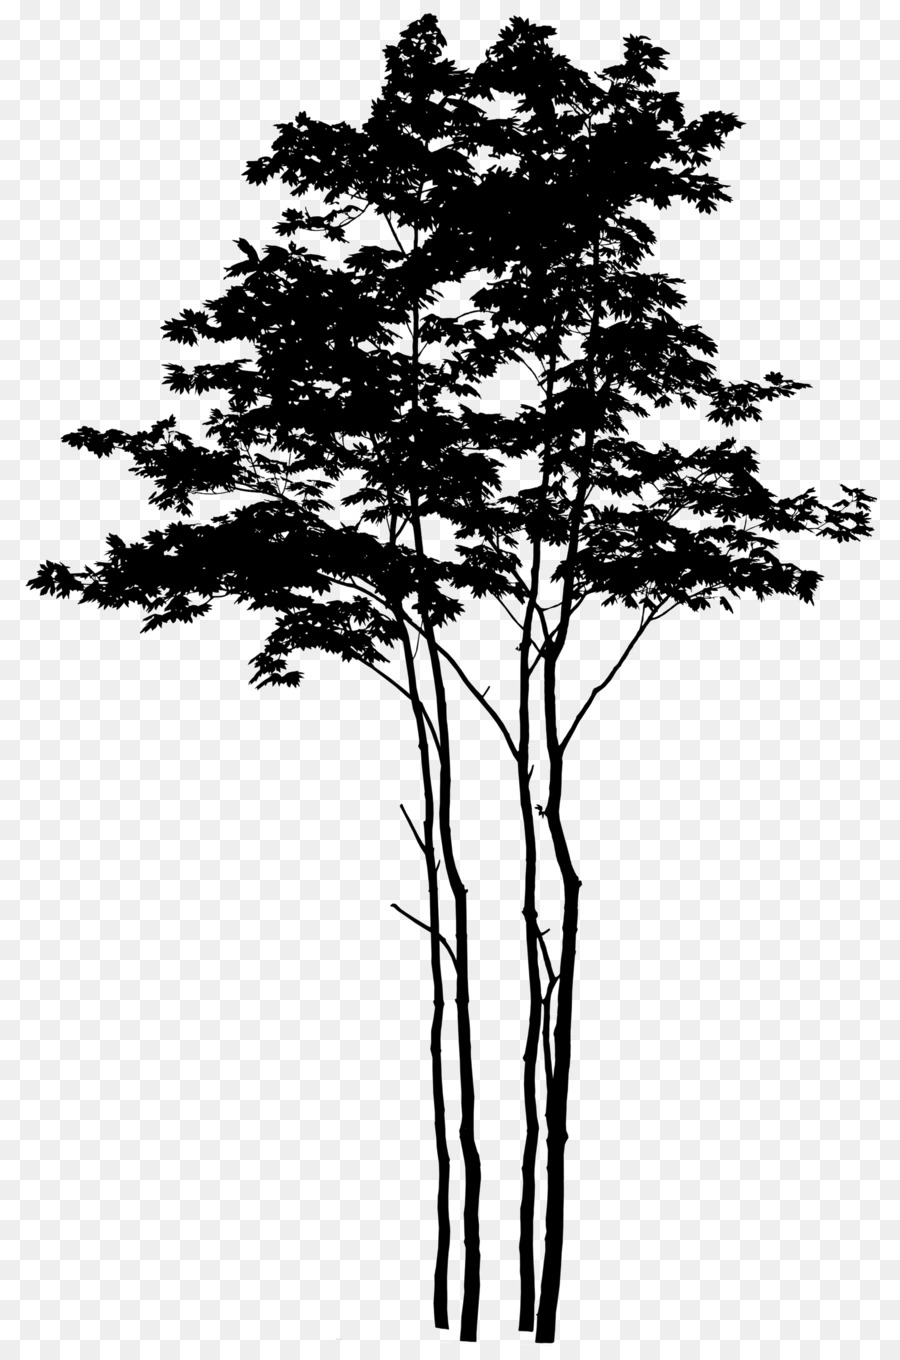 Pine Tree Silhouette.